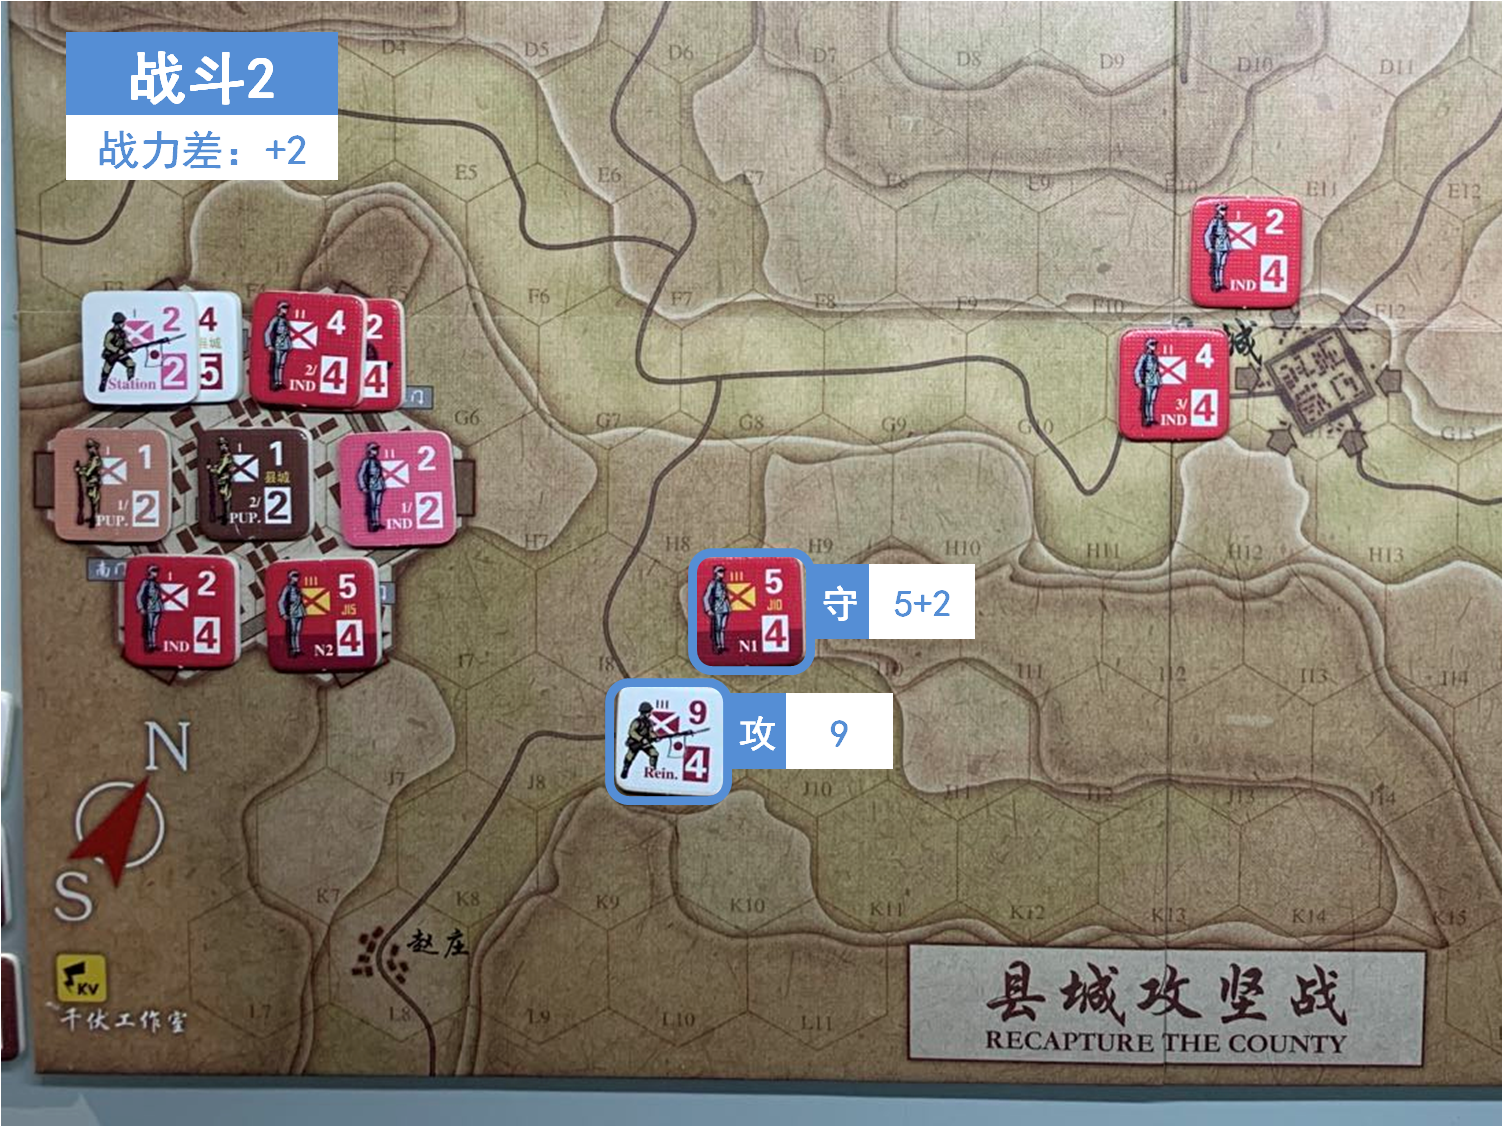 第二回合 日方戰鬥階段 戰鬥2 戰鬥力差值